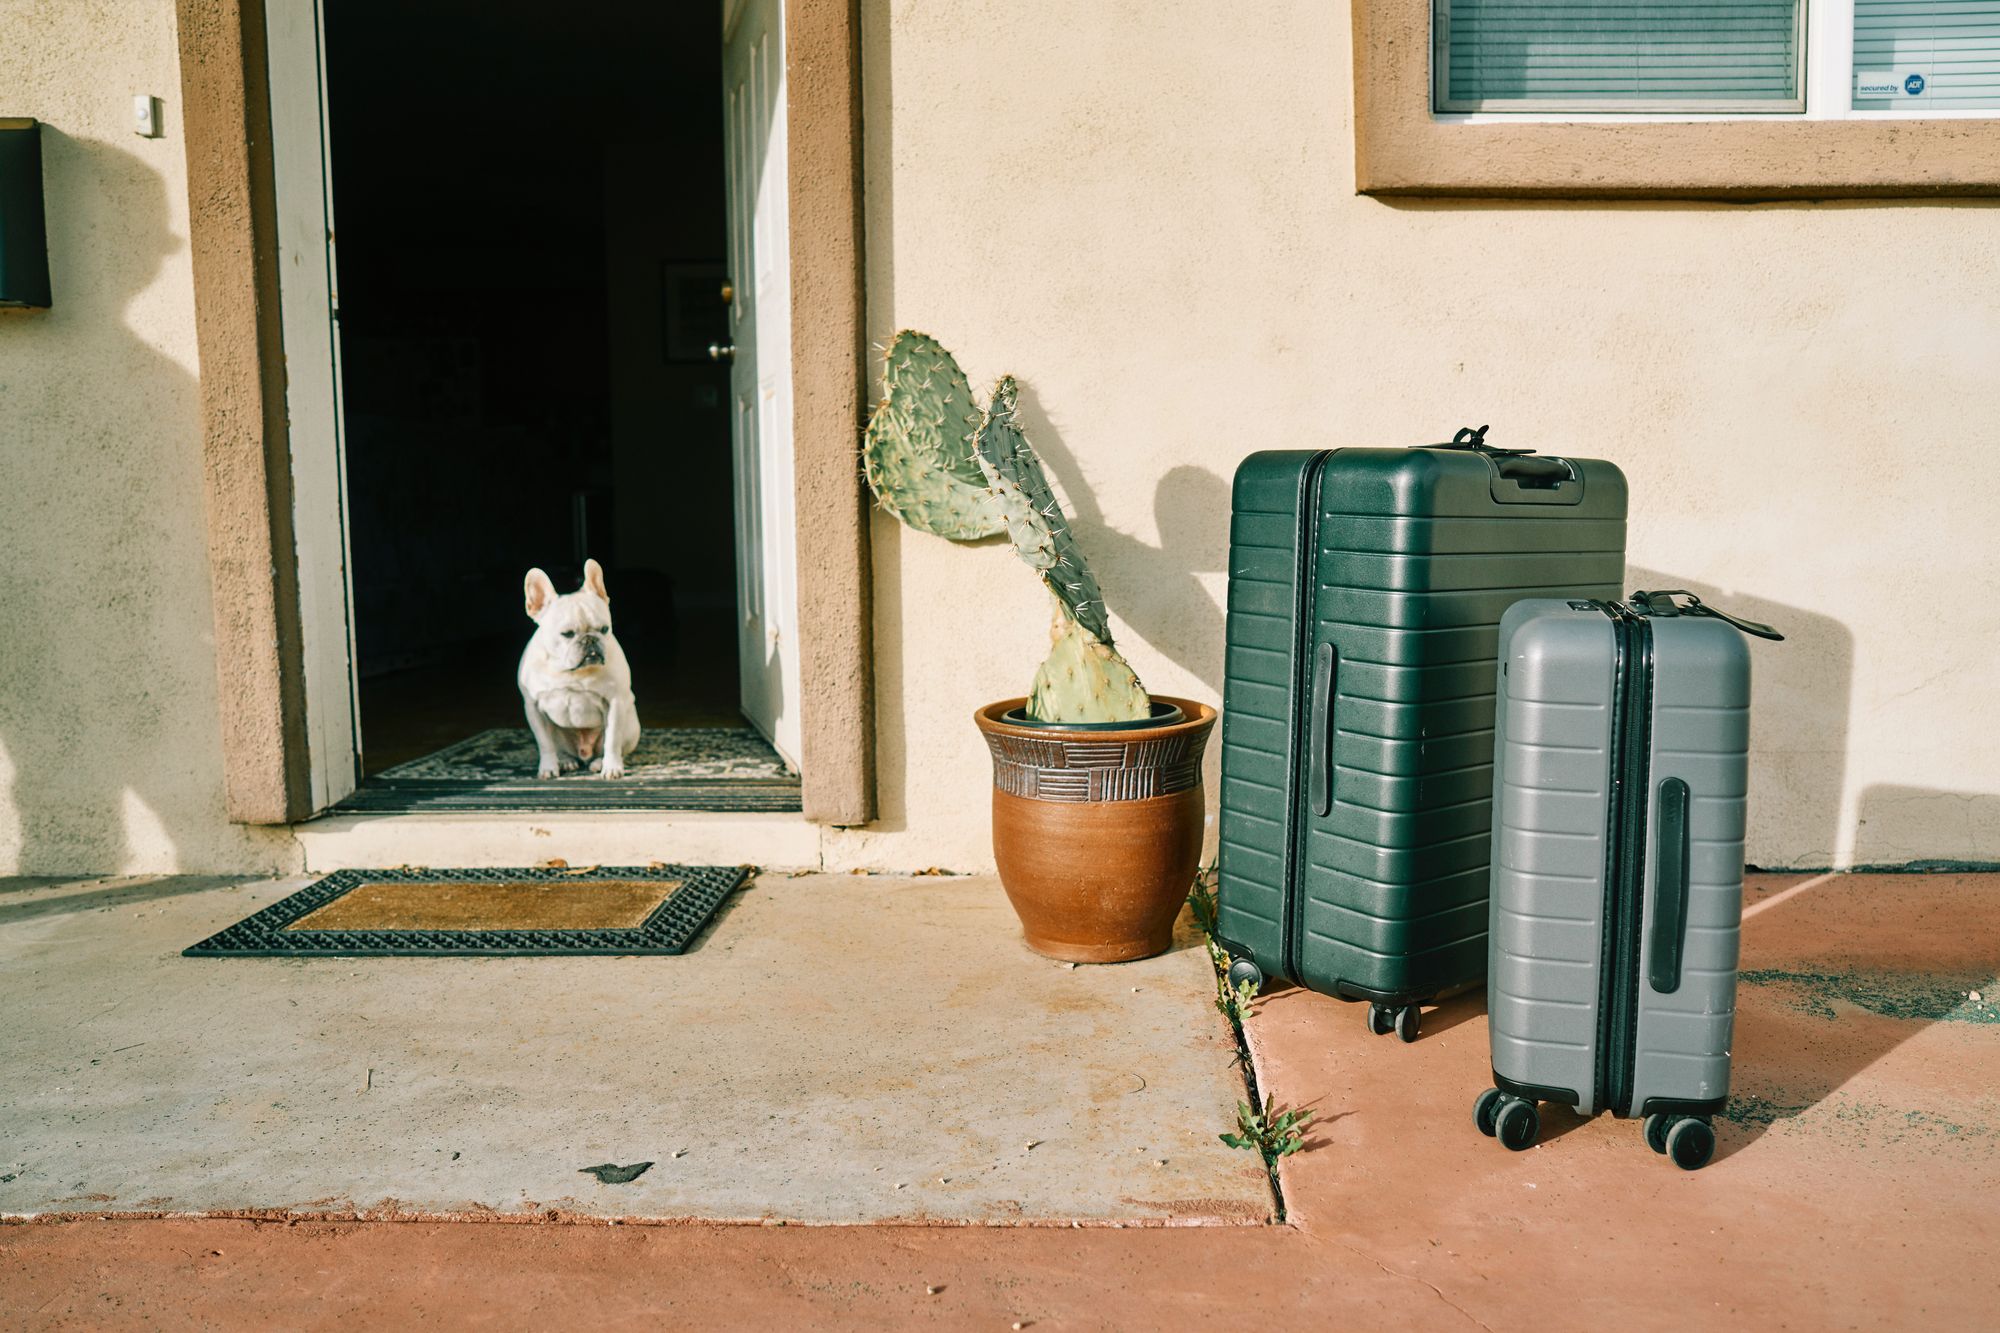 강아지와 해외여행 갈 때 체크해야 할 내용 5가지